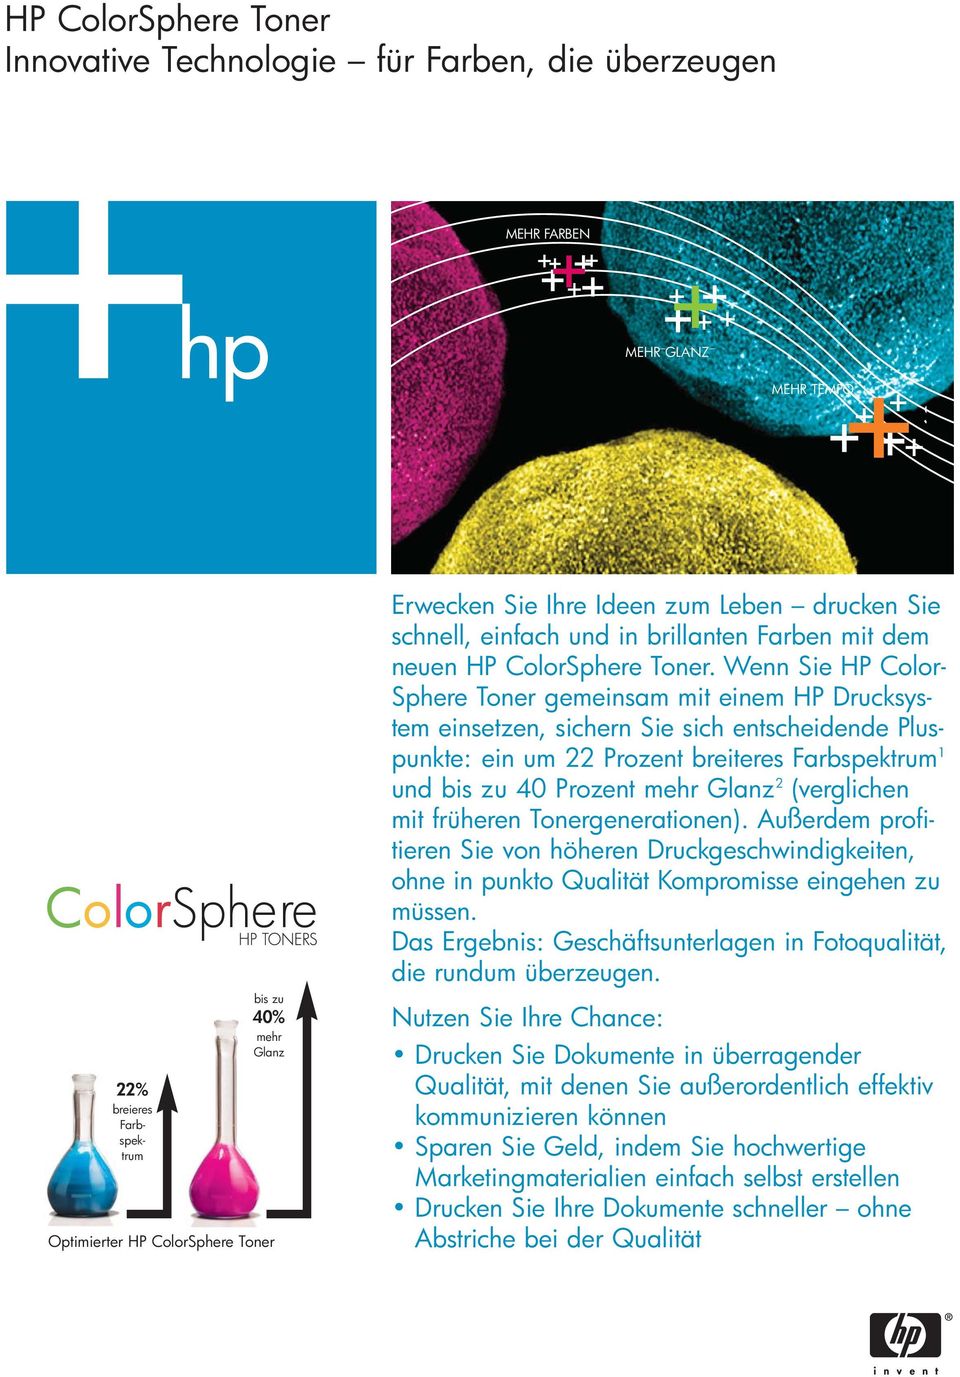 Wenn Sie HP Color- Sphere Toner gemeinsam mit einem HP Drucksystem einsetzen, sichern Sie sich entscheidende Pluspunkte: ein um 22 Prozent breiteres Farbspektrum 1 und bis zu 40 Prozent mehr Glanz 2